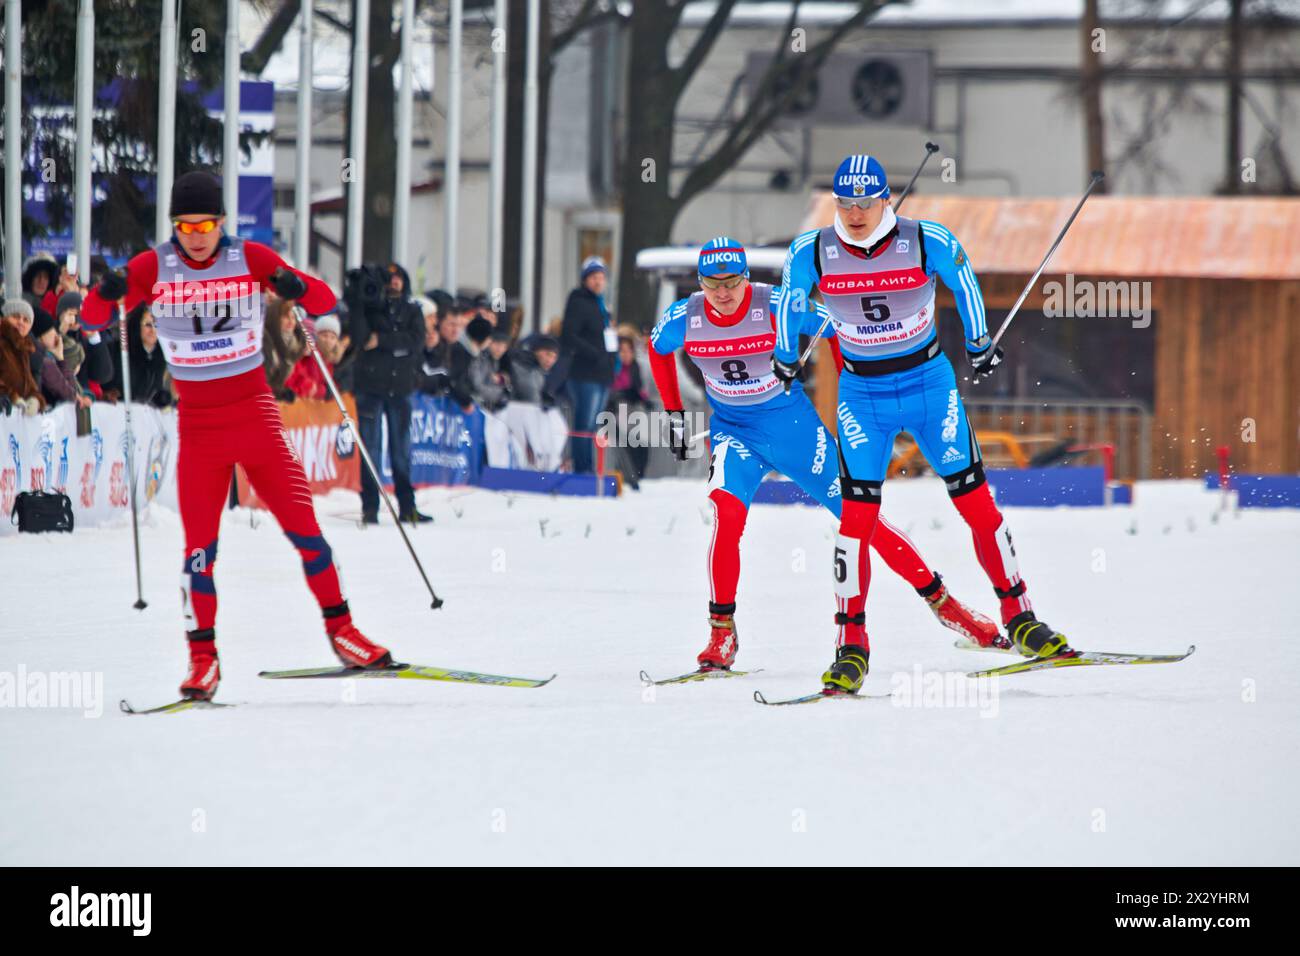 MOSCOU - 9 février : Groupe de skieurs lors de la Coupe continentale FIS course de ski dans la catégorie City-event, 9 février 2013, Moscou, Russie. La piste est construite Banque D'Images